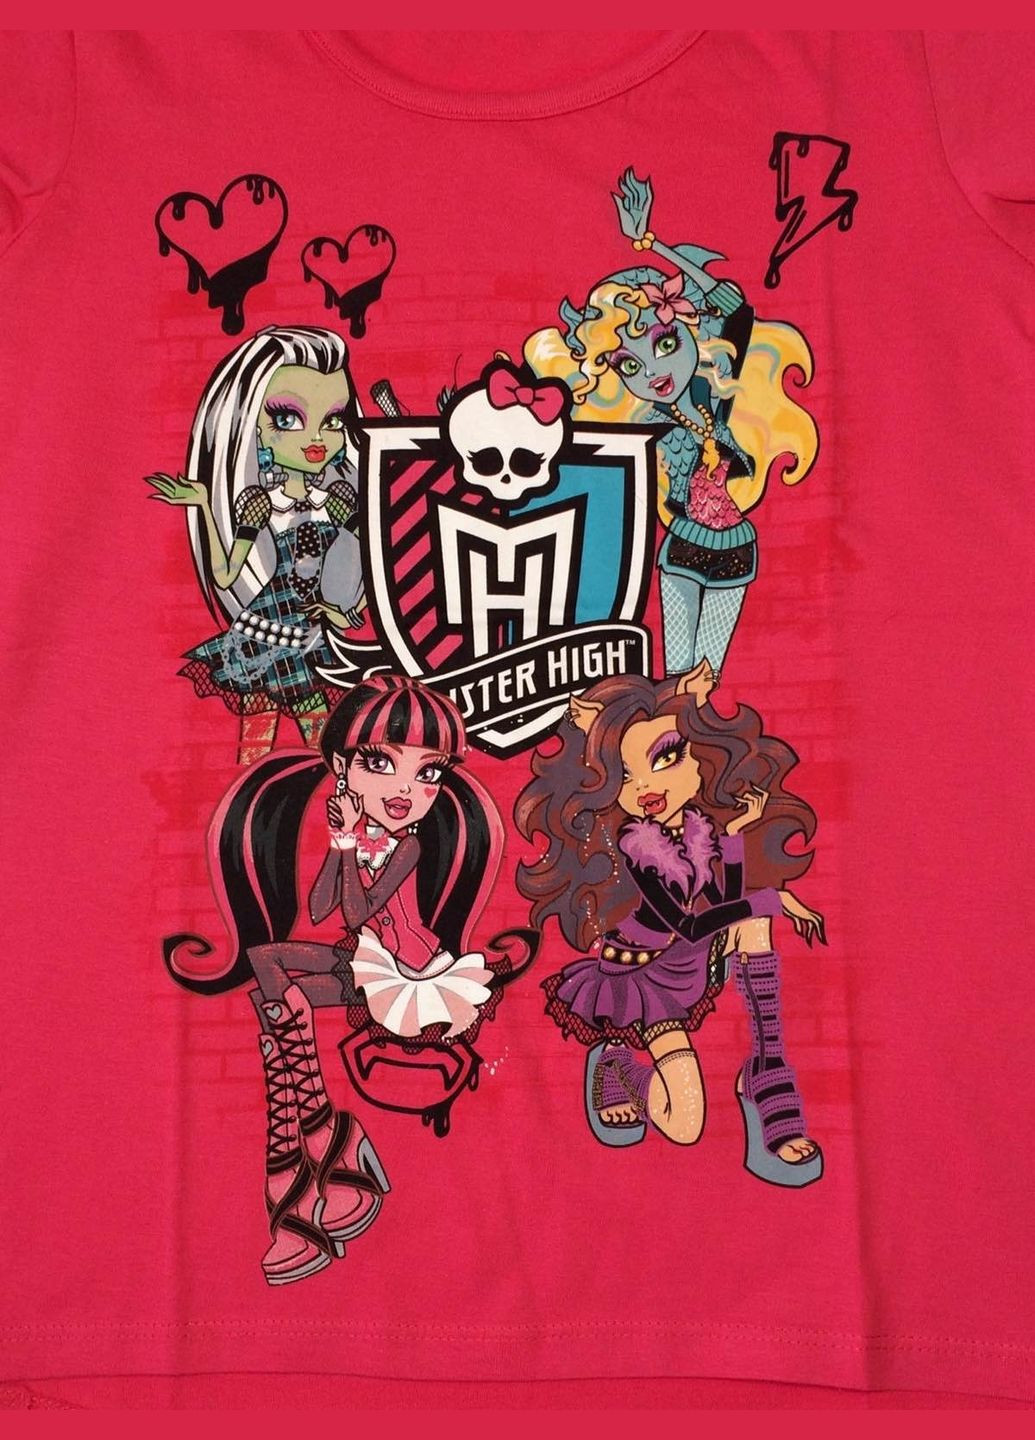 Темно-розовая летняя футболка Monster High